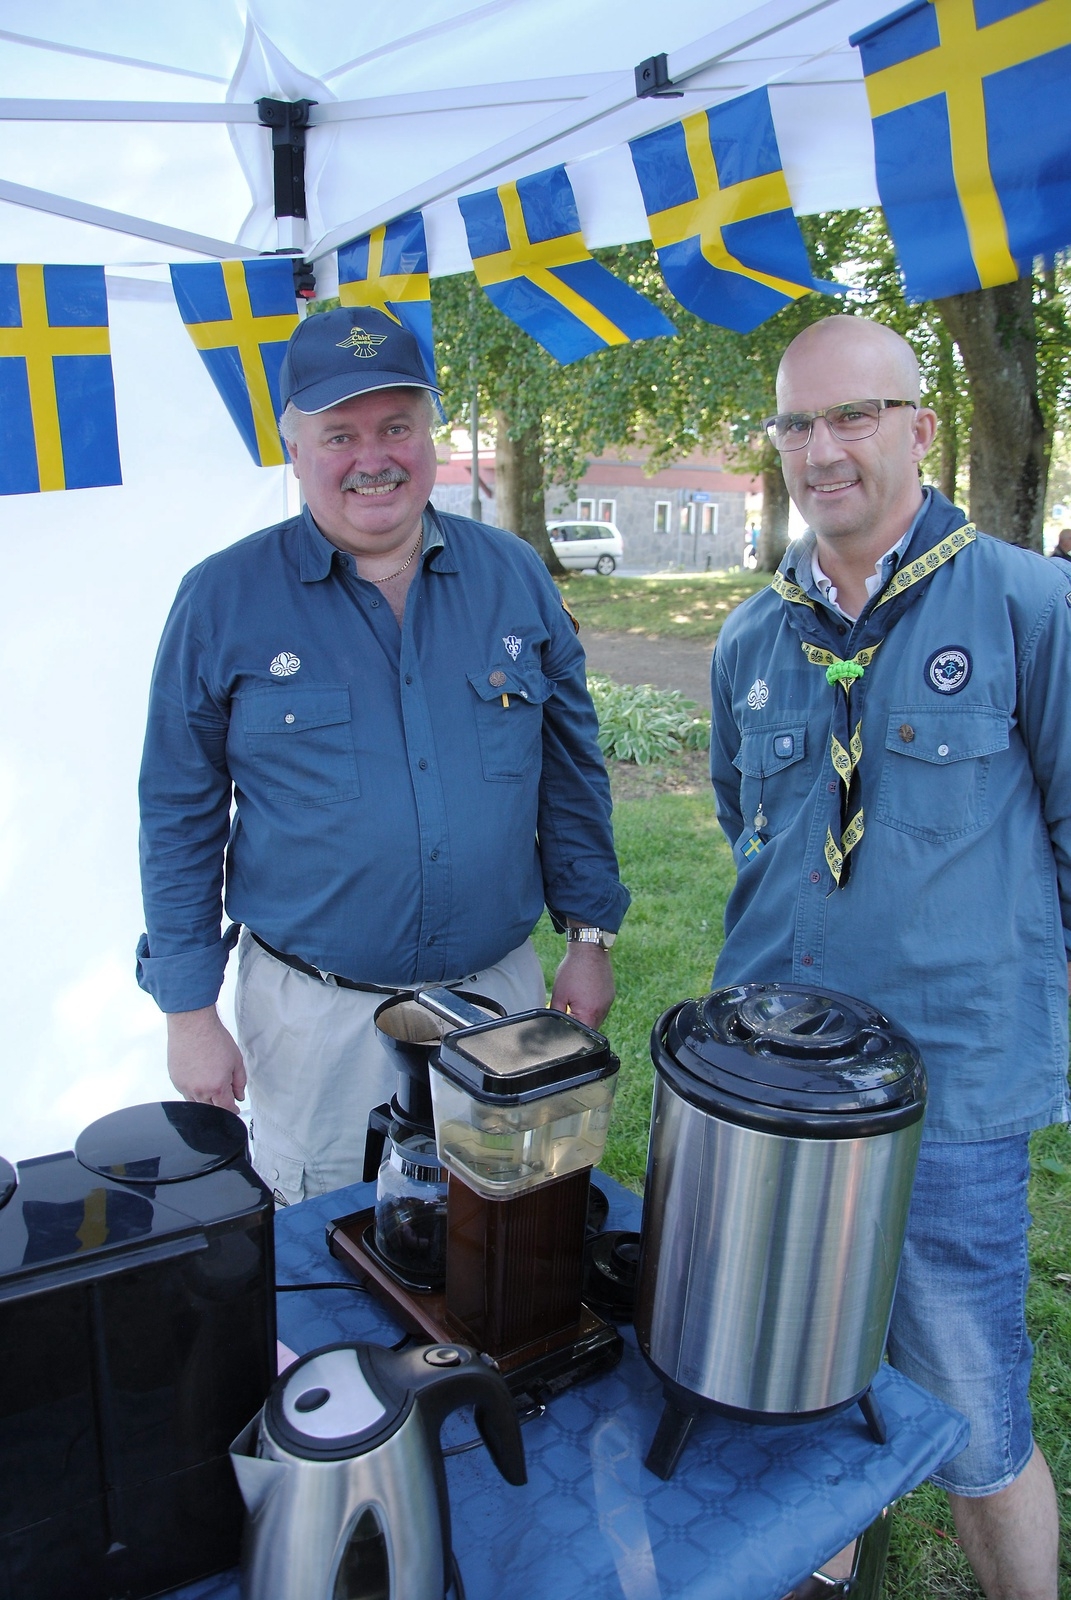 Mats Ernstsson och Pål Nilsson från scouterna kokade kaffe och bjöd alla på tårta.